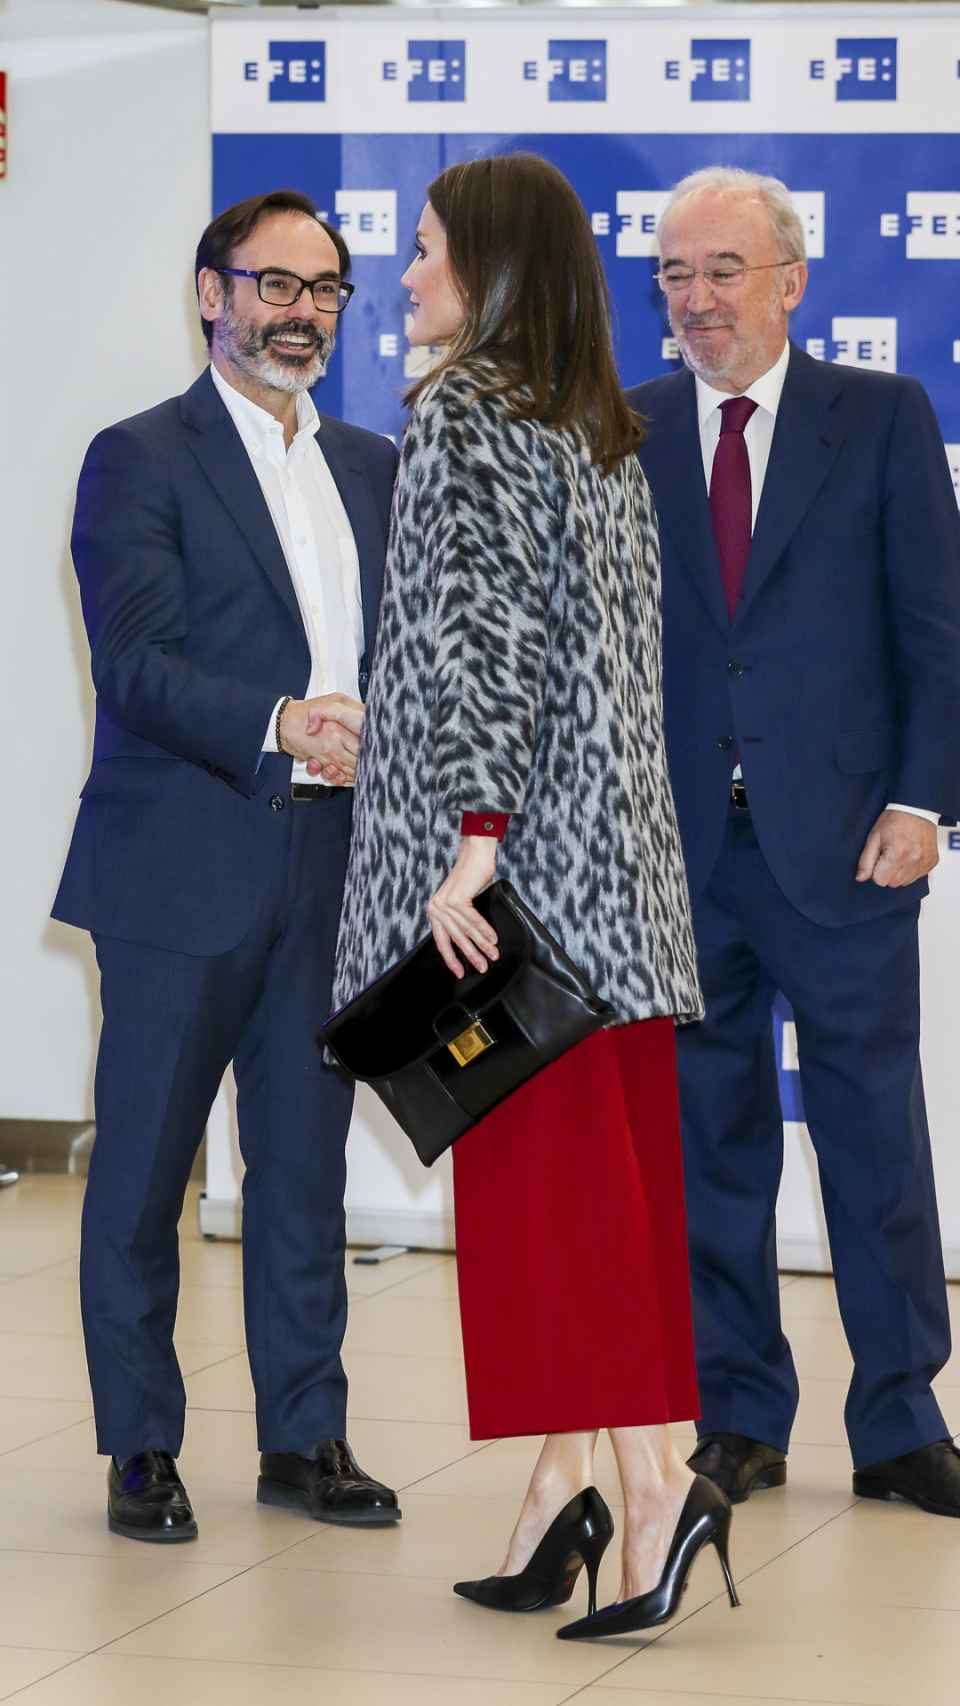 La reina Letizia con cartera de Hugo Boss saludando a Fernando Garea, presidente de EFE. A la derecha, Santiago Muñoz Machado, director de la RAE.